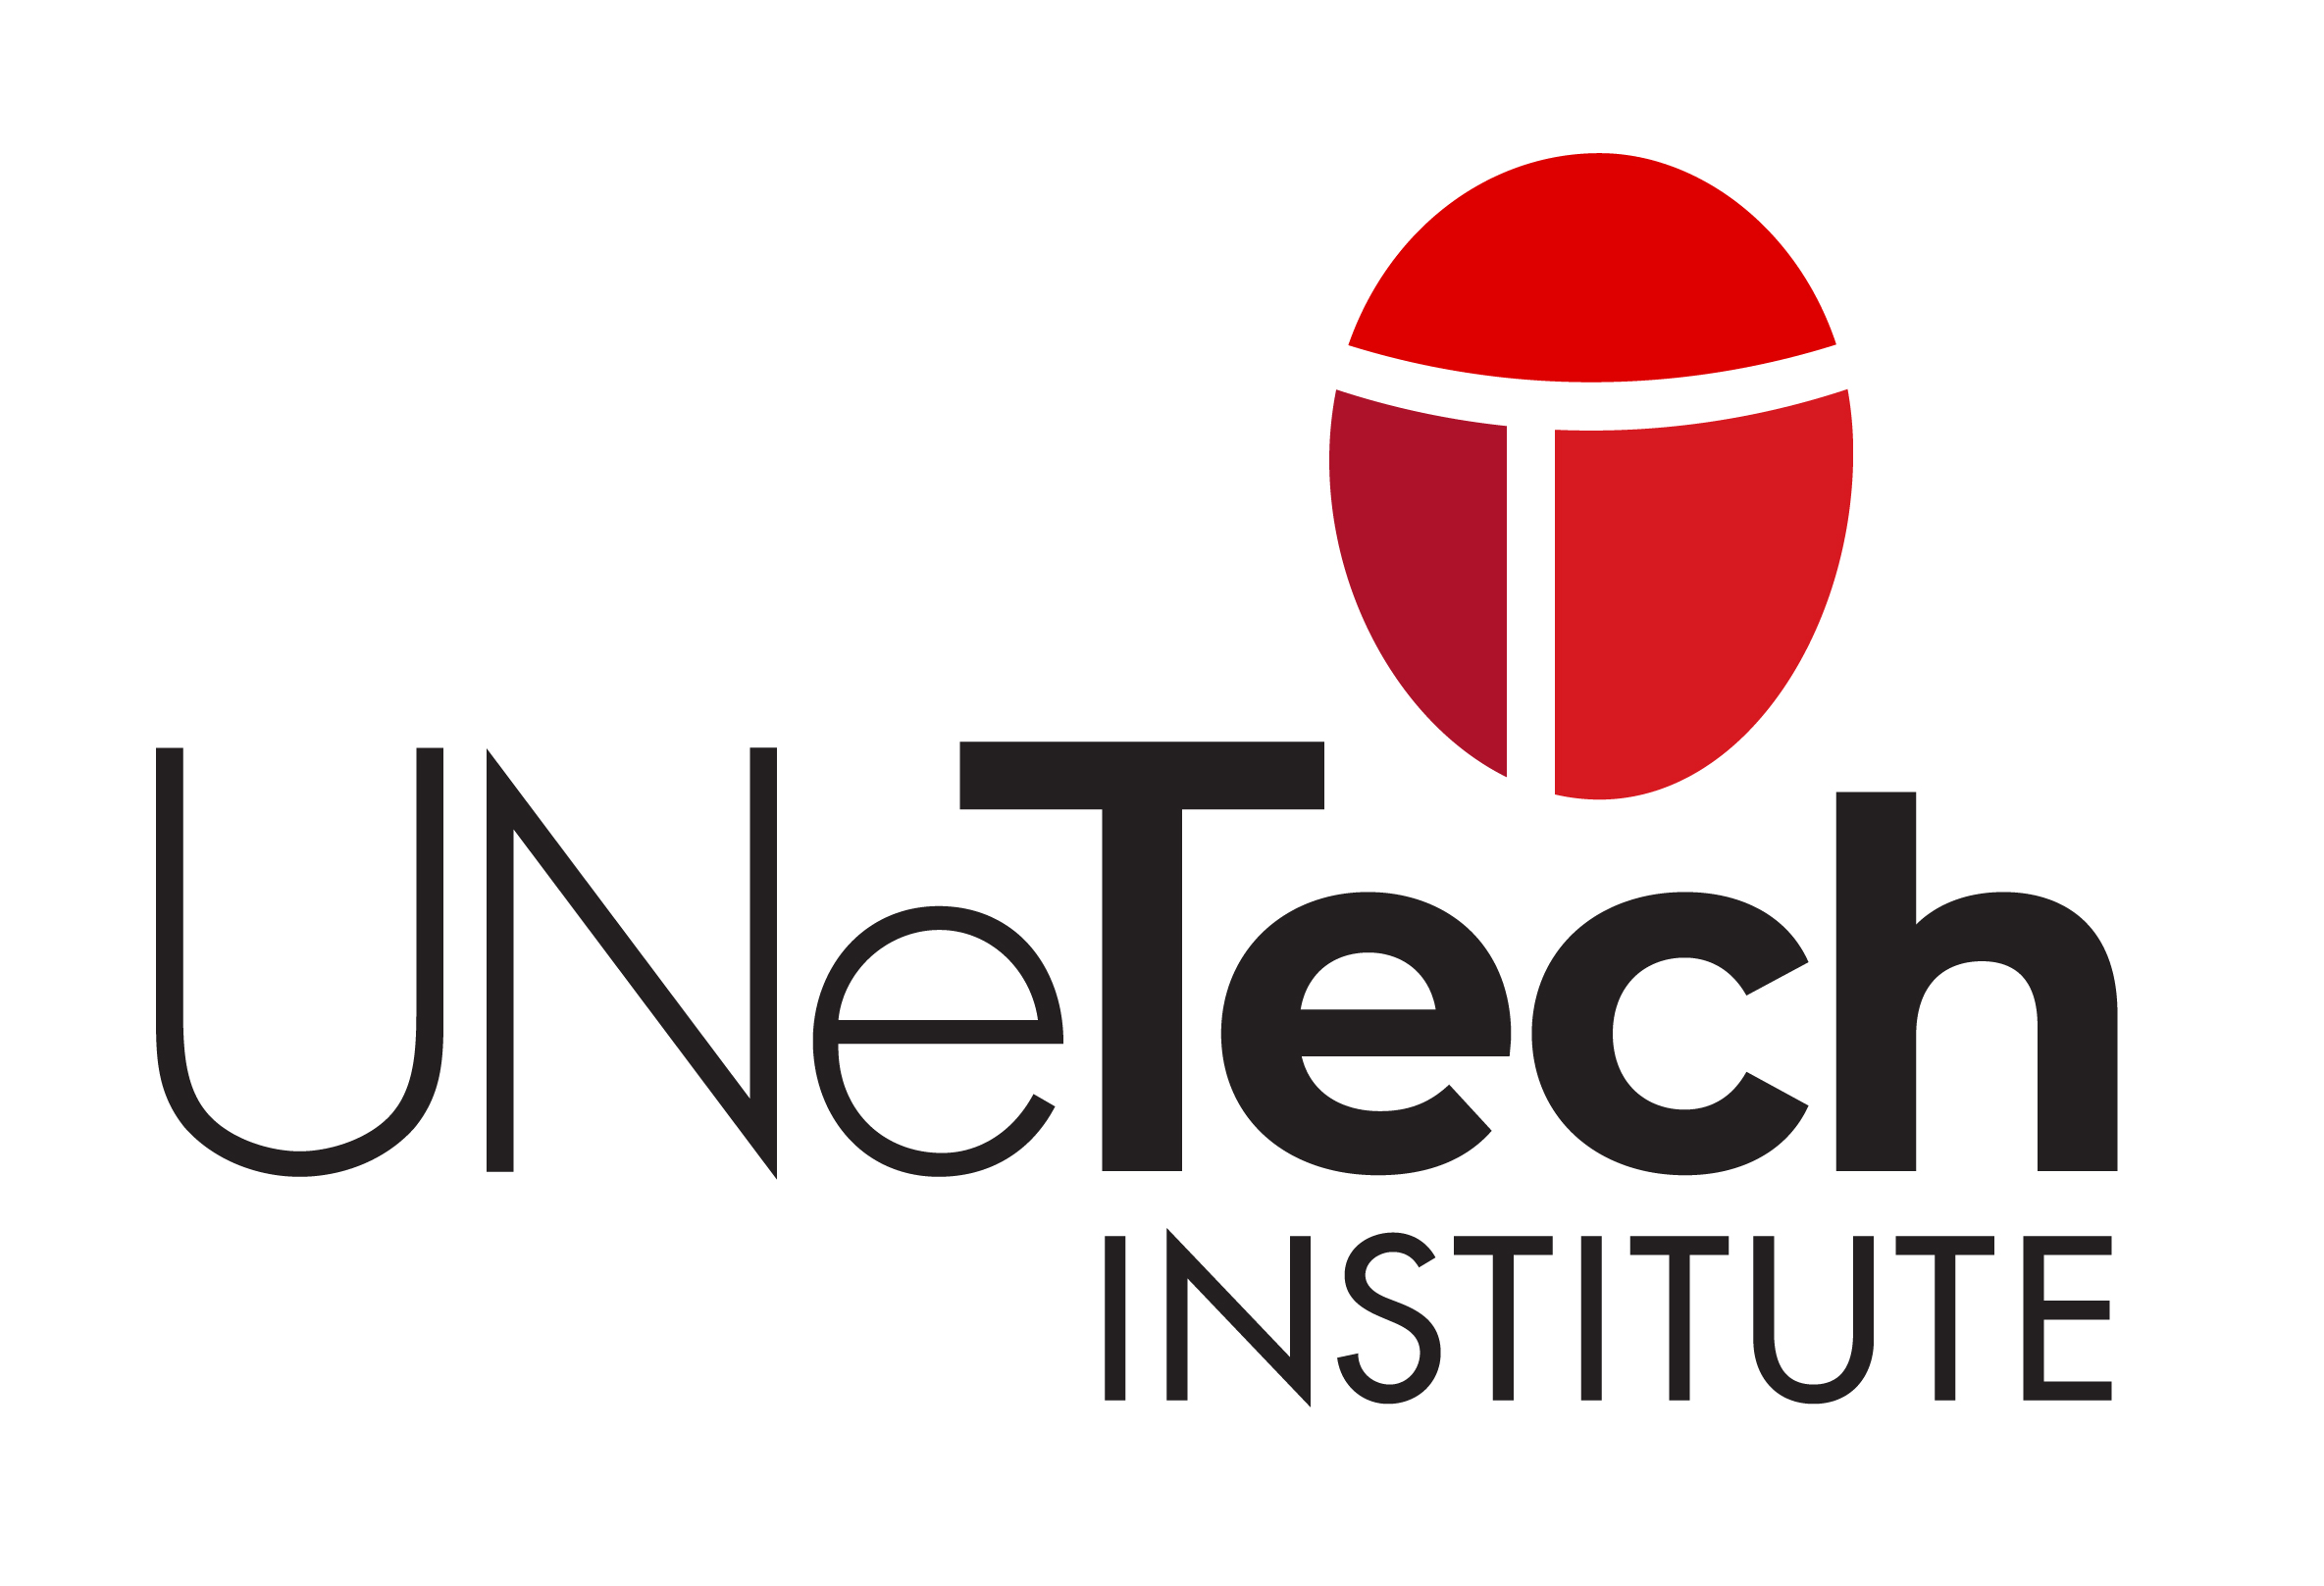 UNeTech Institute